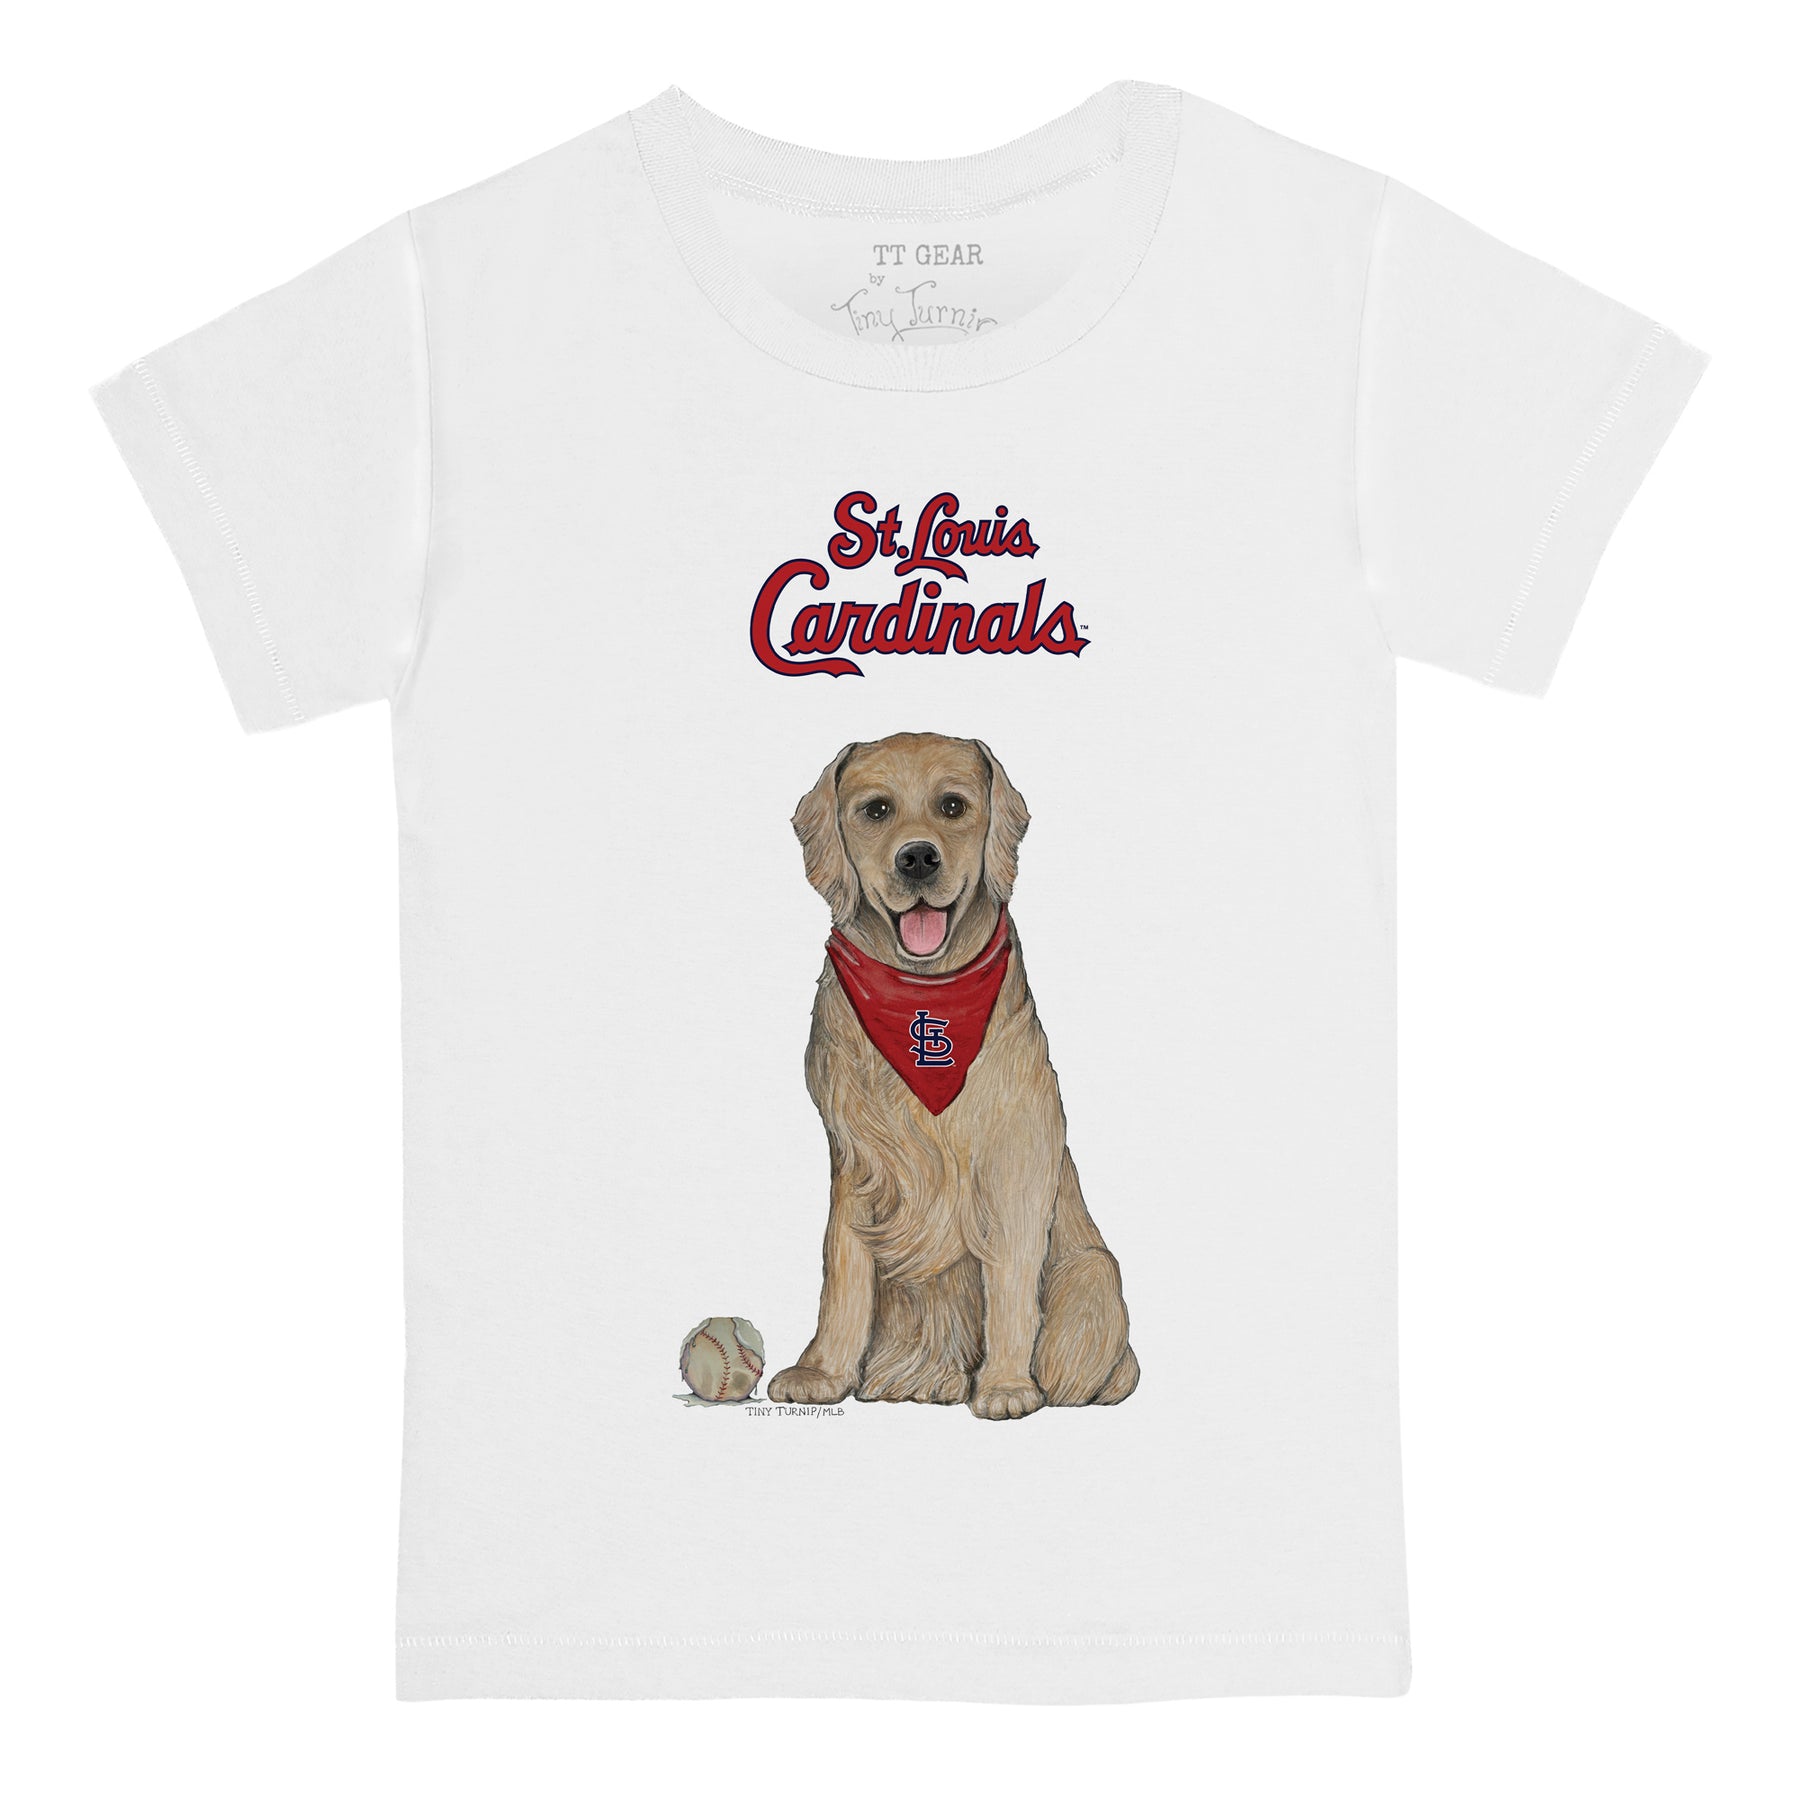 St. Louis Cardinals Golden Retriever Tee Shirt